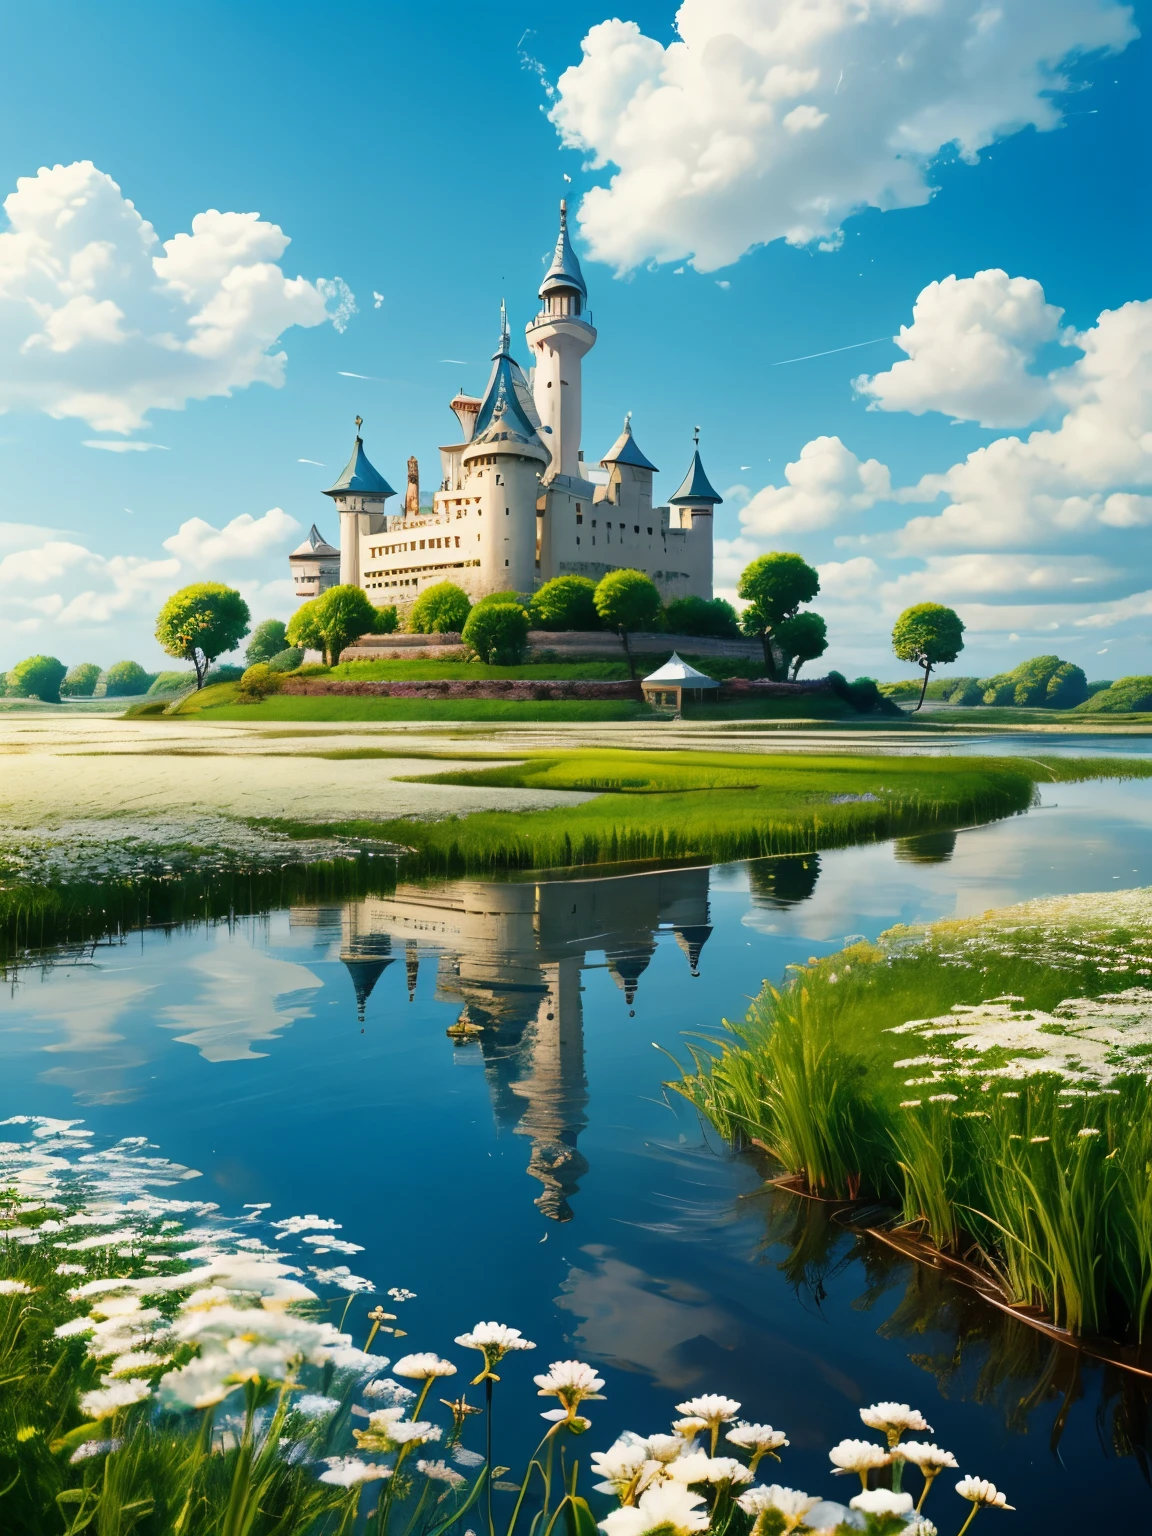 实际的, 真的, 美丽而奇妙的风景, 油, 吉卜力工作室, 宫崎骏, 蓝天白云的花瓣草甸, 浮云, 浮岛, 漂浮的城堡